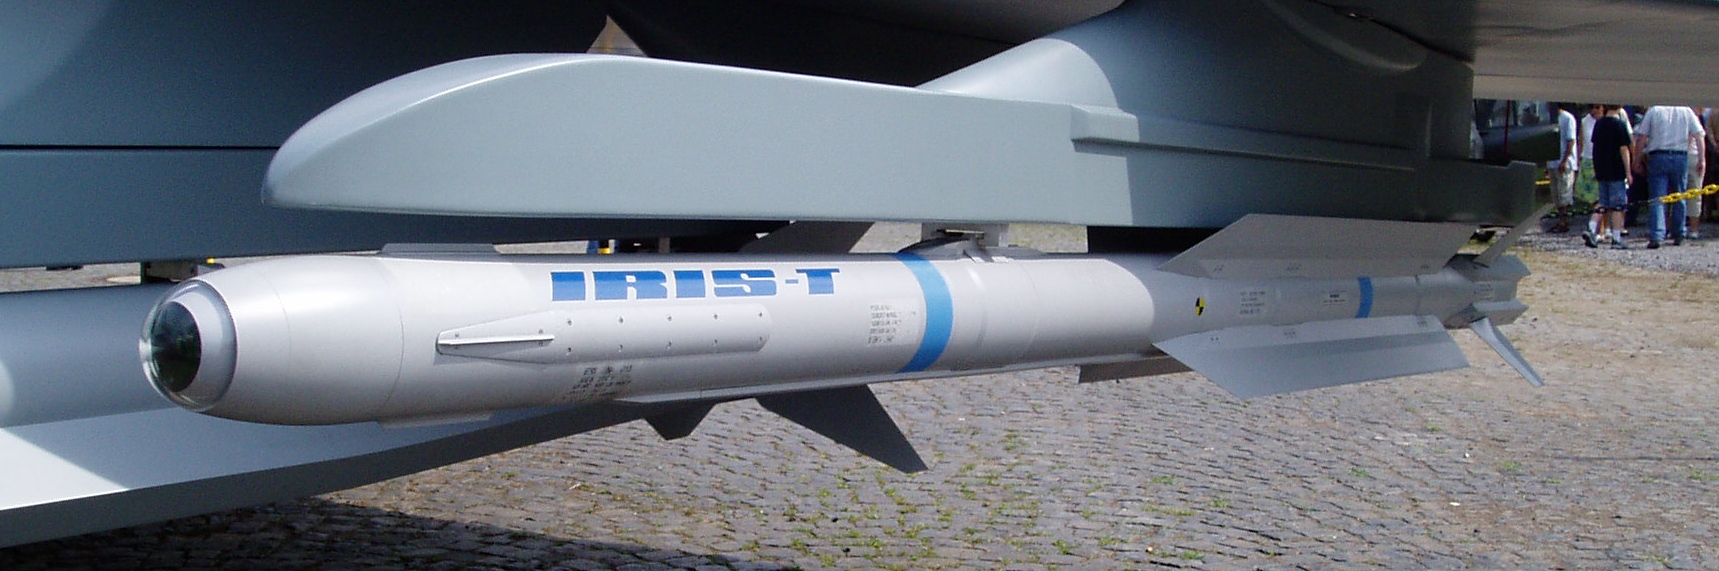 IRIS-T_air-to-air-missile_(recortada).jpg